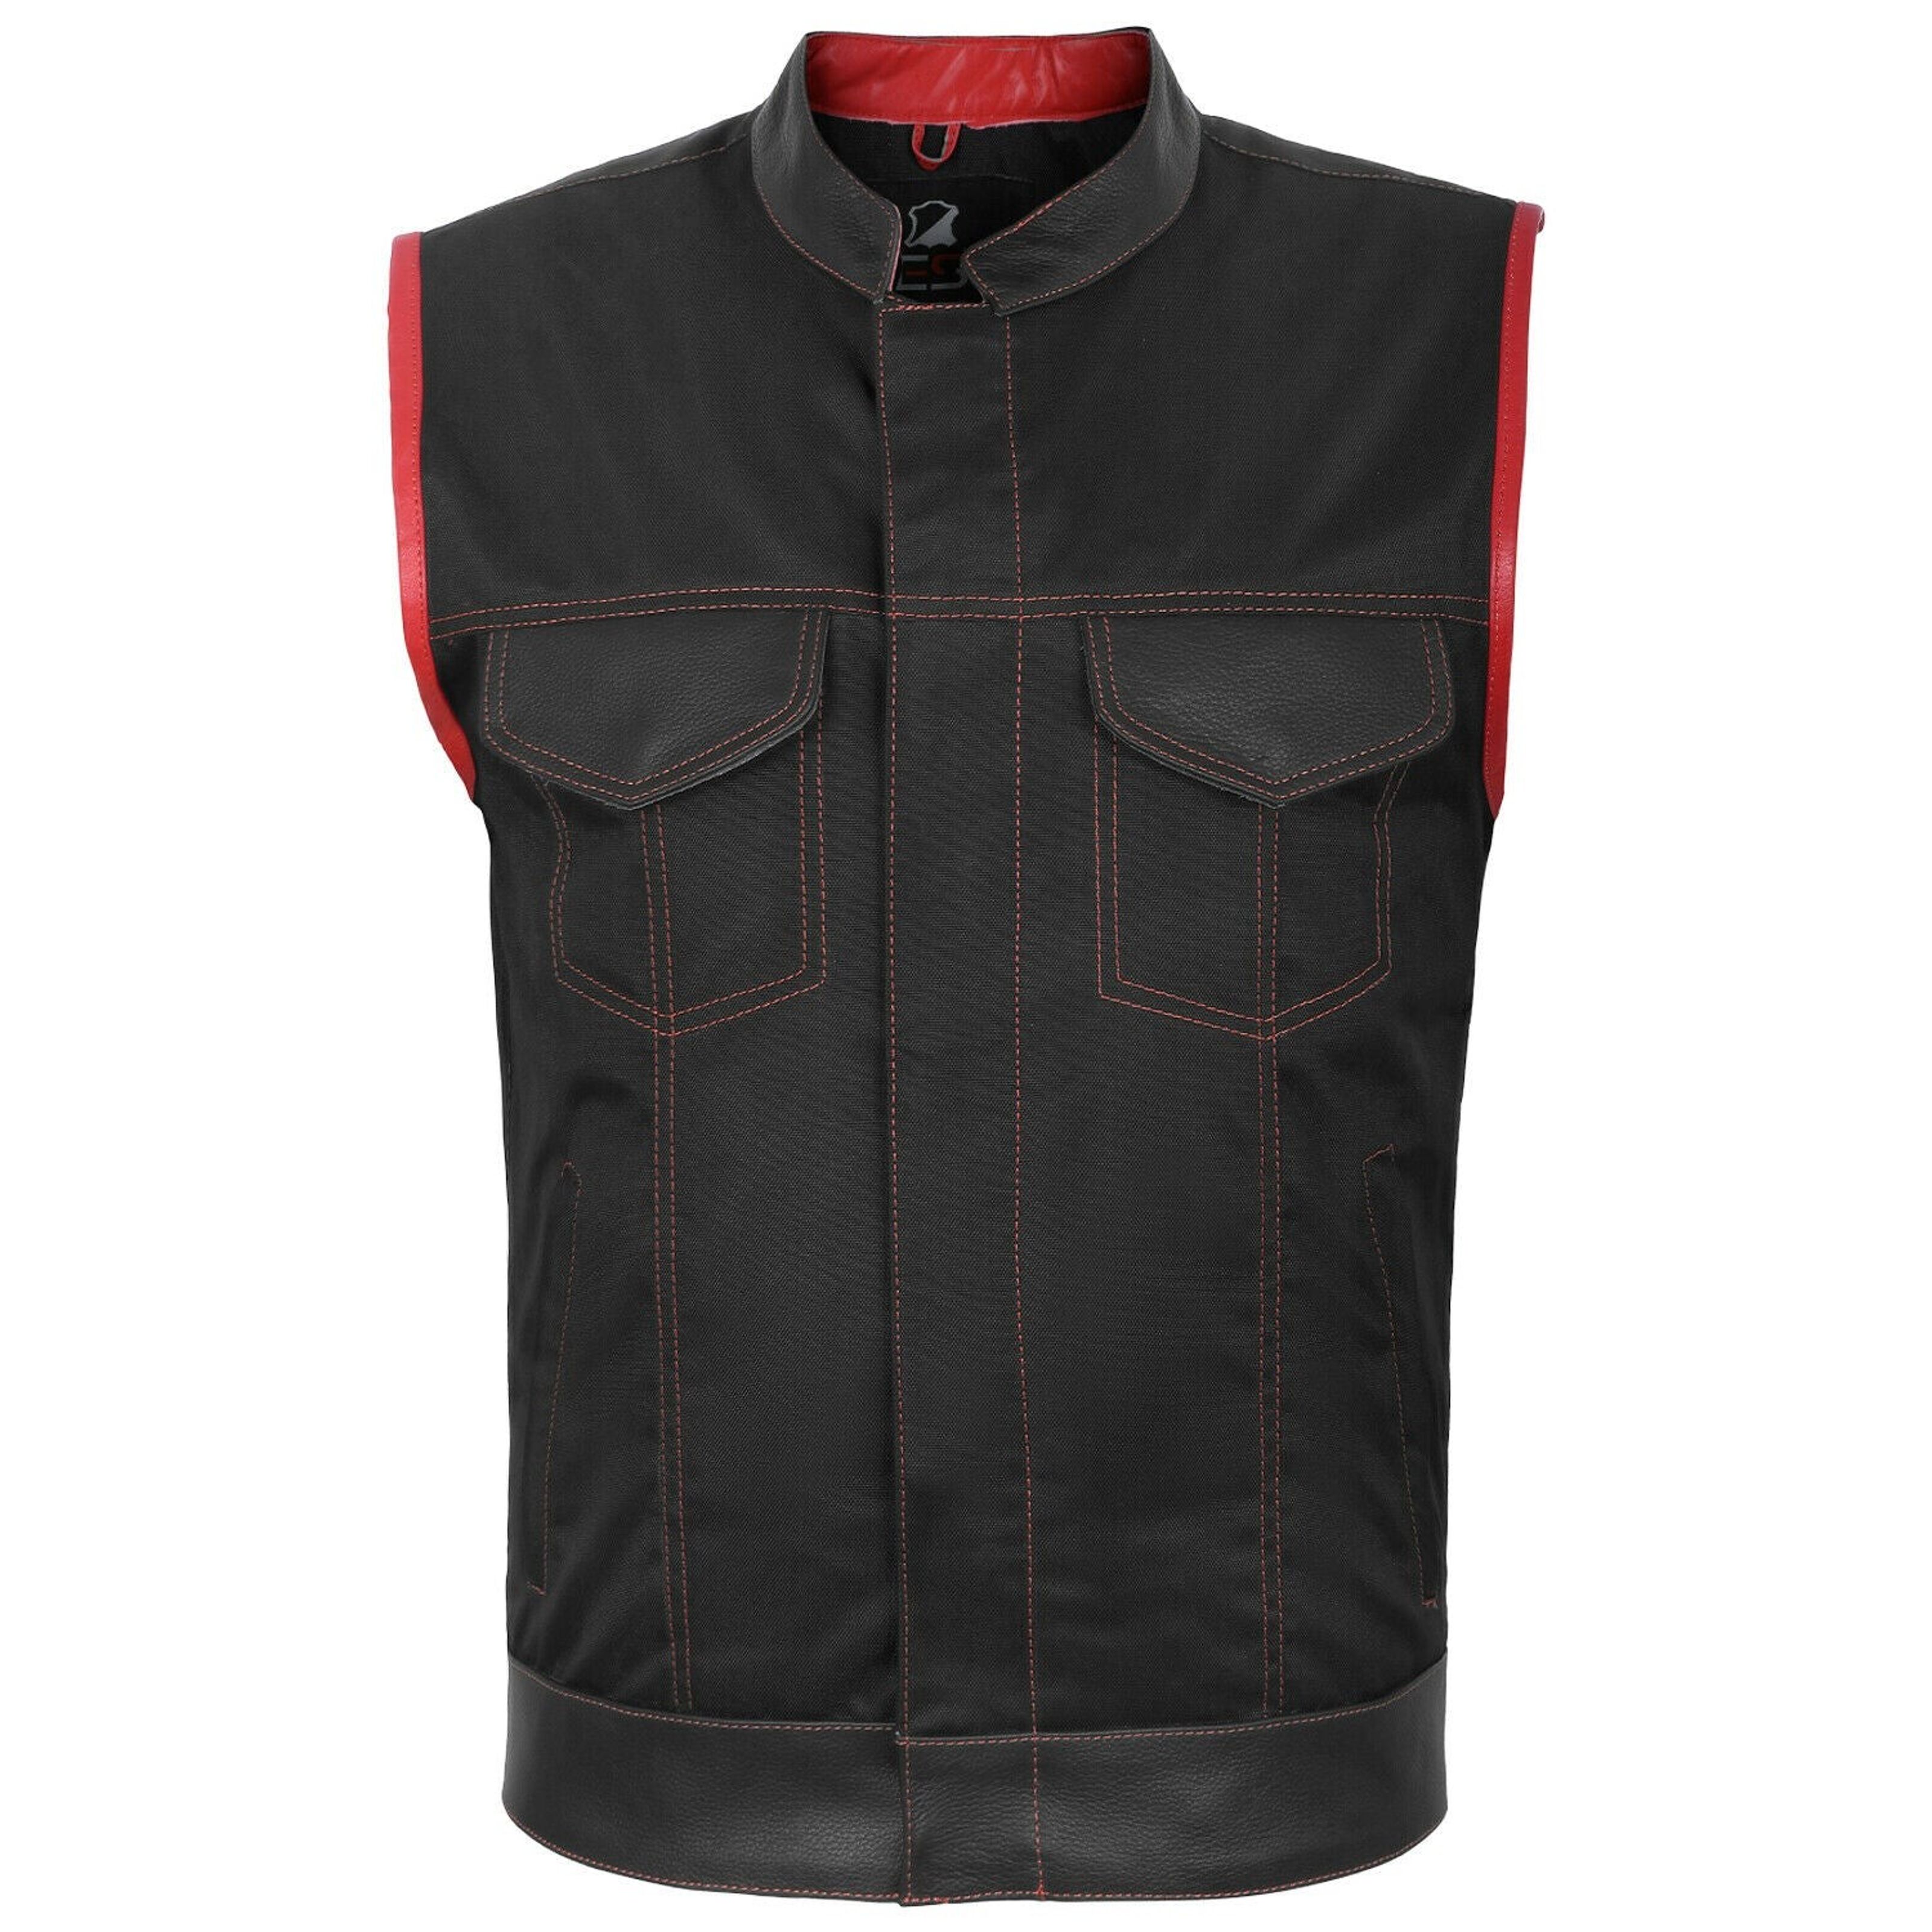 Buy wholesale Leather Mens Fish Hook Buckle Biker Vest Sides Laces - XL